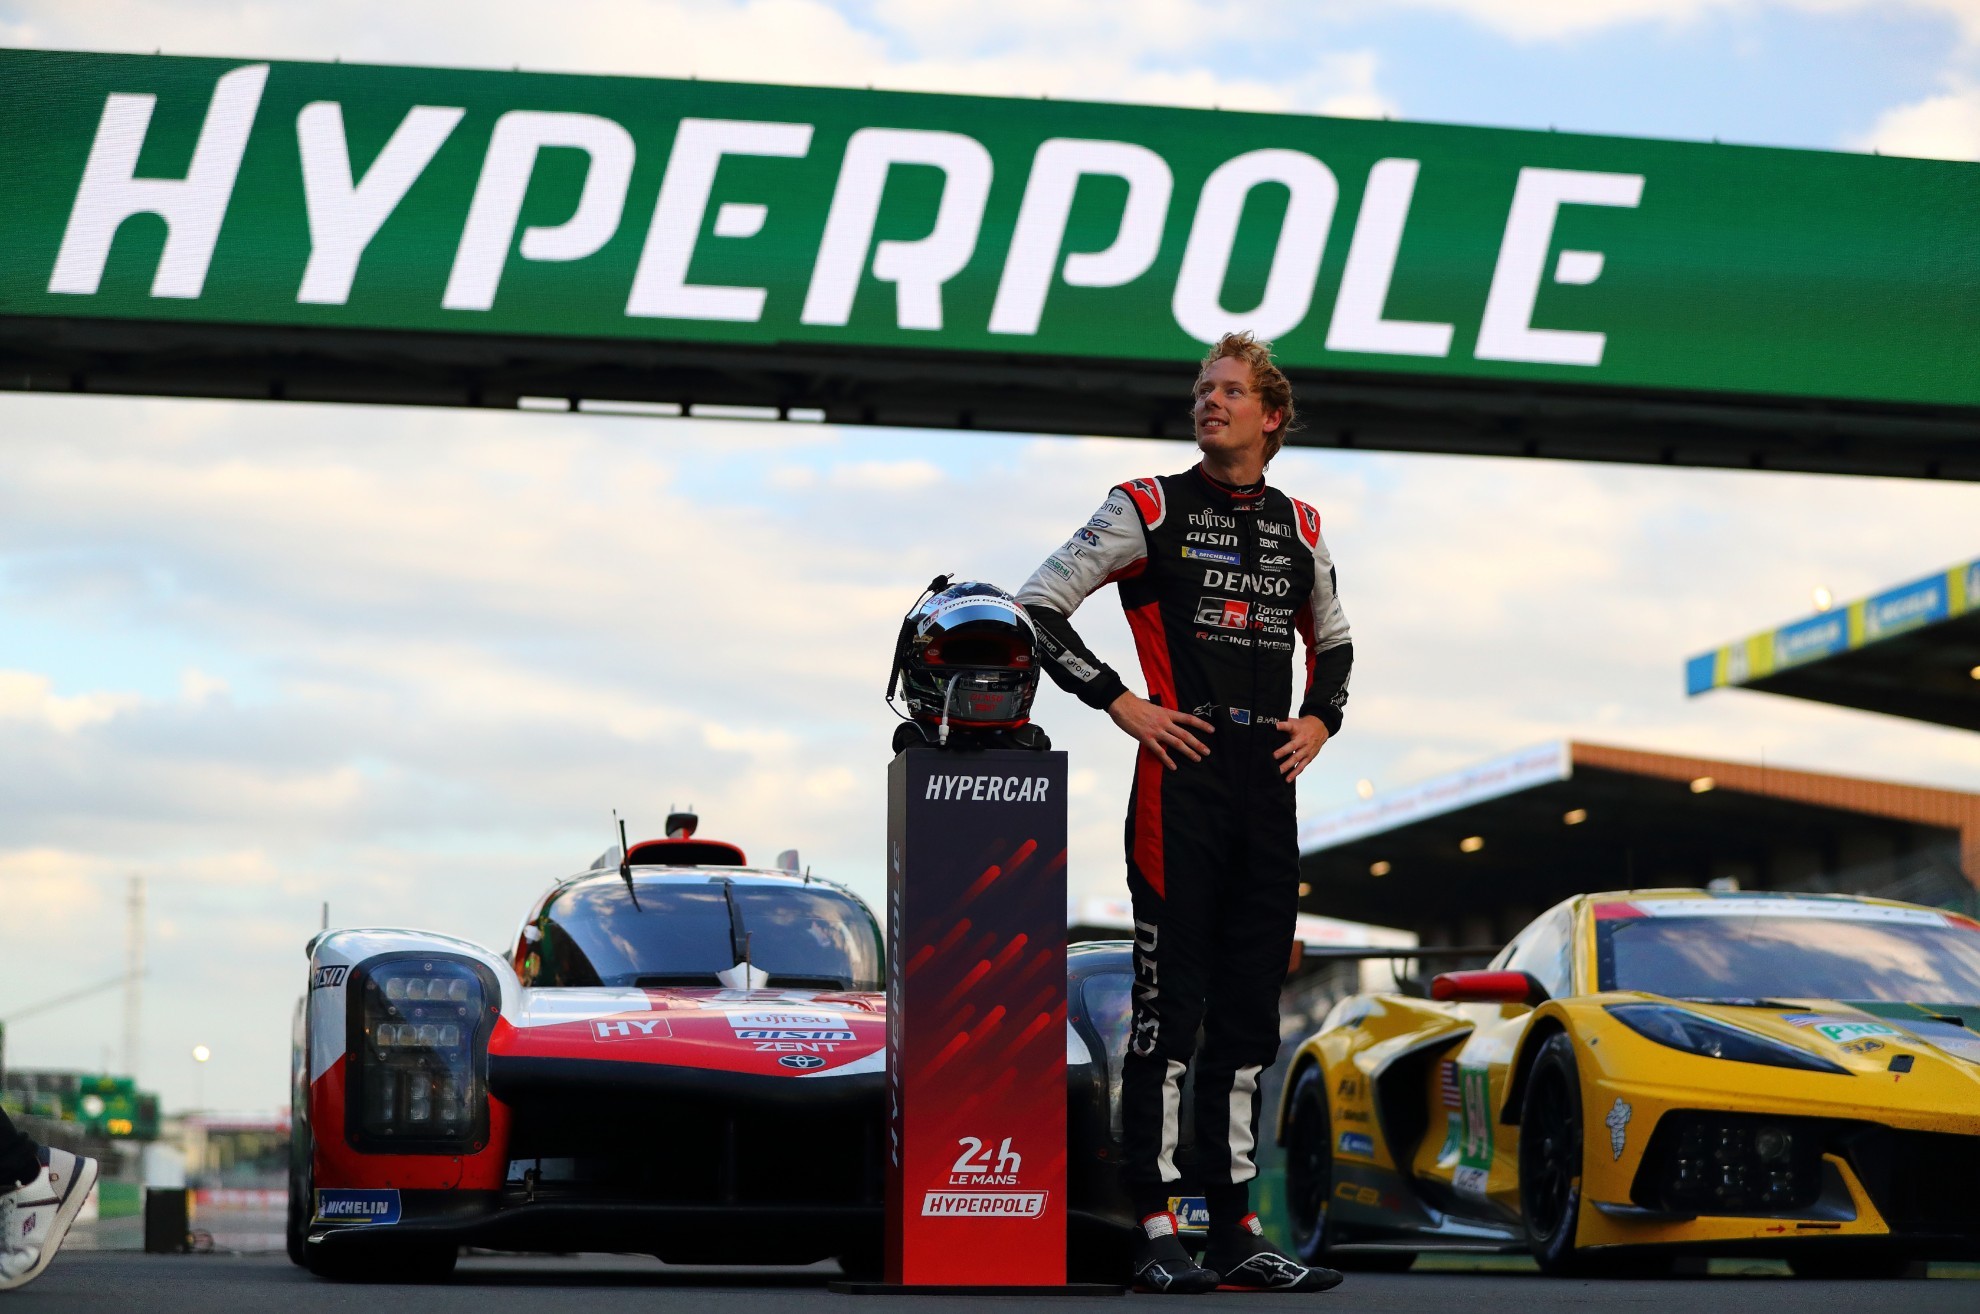 Hartley sum la octava pole consecutiva de Toyota, igualando una marca de Audi.